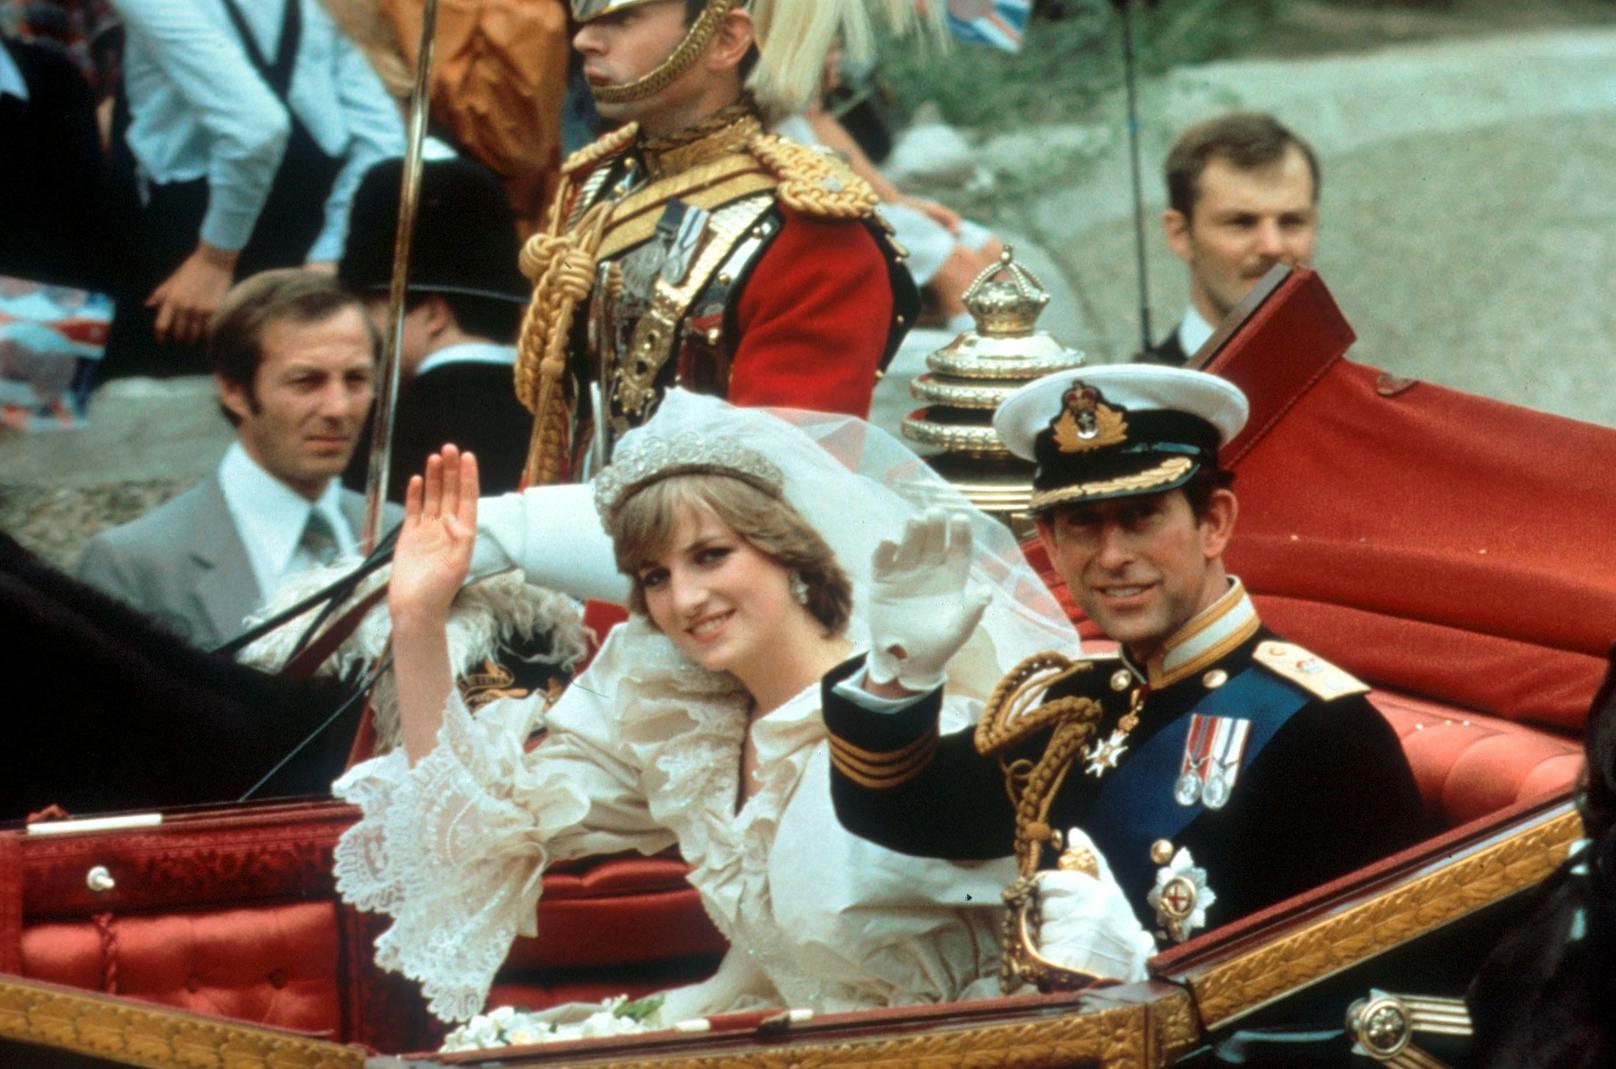 <a data-li-document-ref="100269782" href="https://www.heute.at/s/onlyfans-star-behauptet-bin-die-cousine-von-lady-di-100269782">Lady Diana Spencer</a>&nbsp;hatte Prinz Chales im Sommer 1981 geheiratet. Elf Jahre später folgte die Trennung.